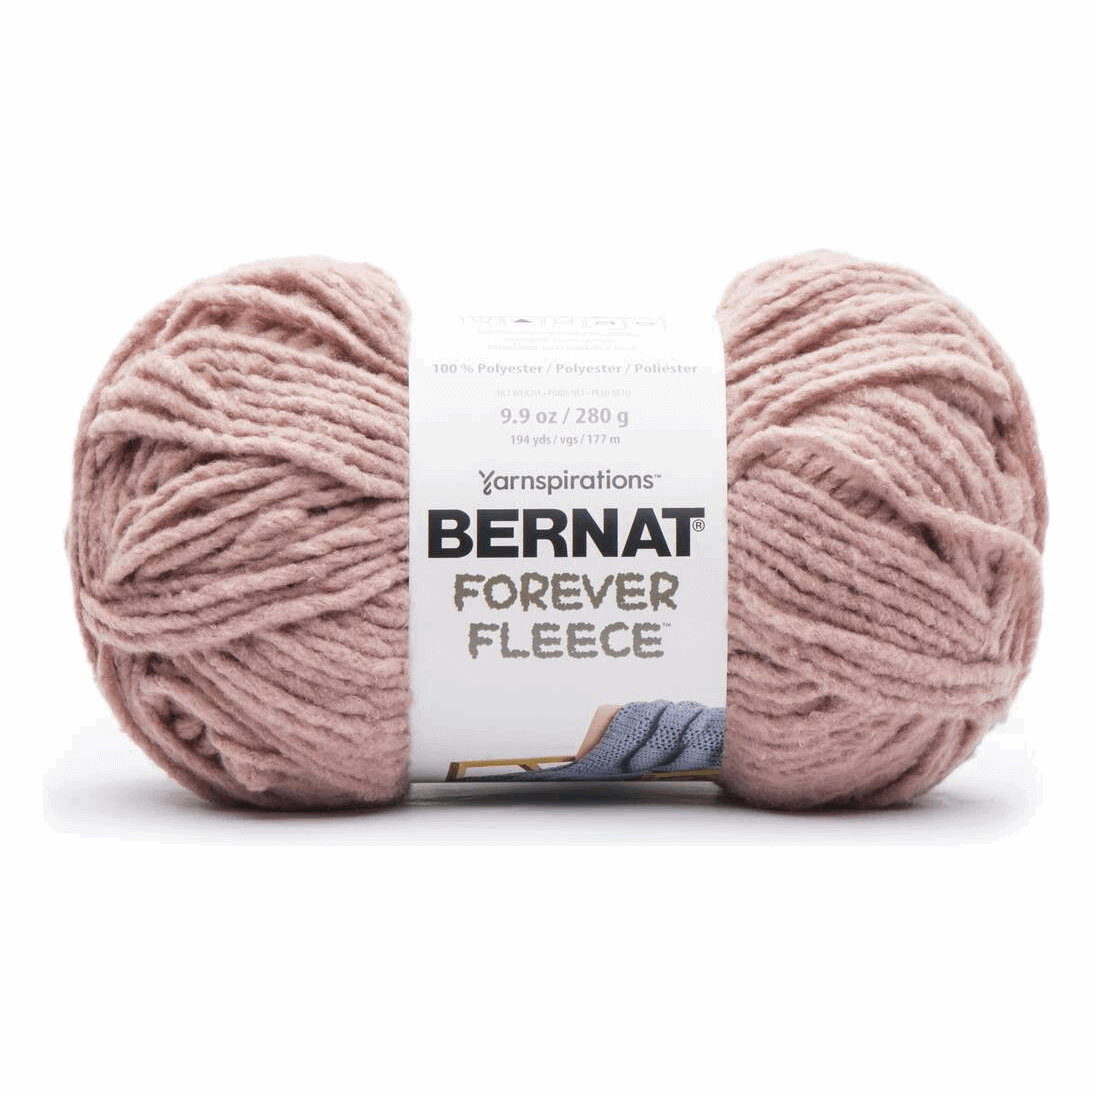 Bernat Forever Fleece Yarn Sold As A 2 Pack